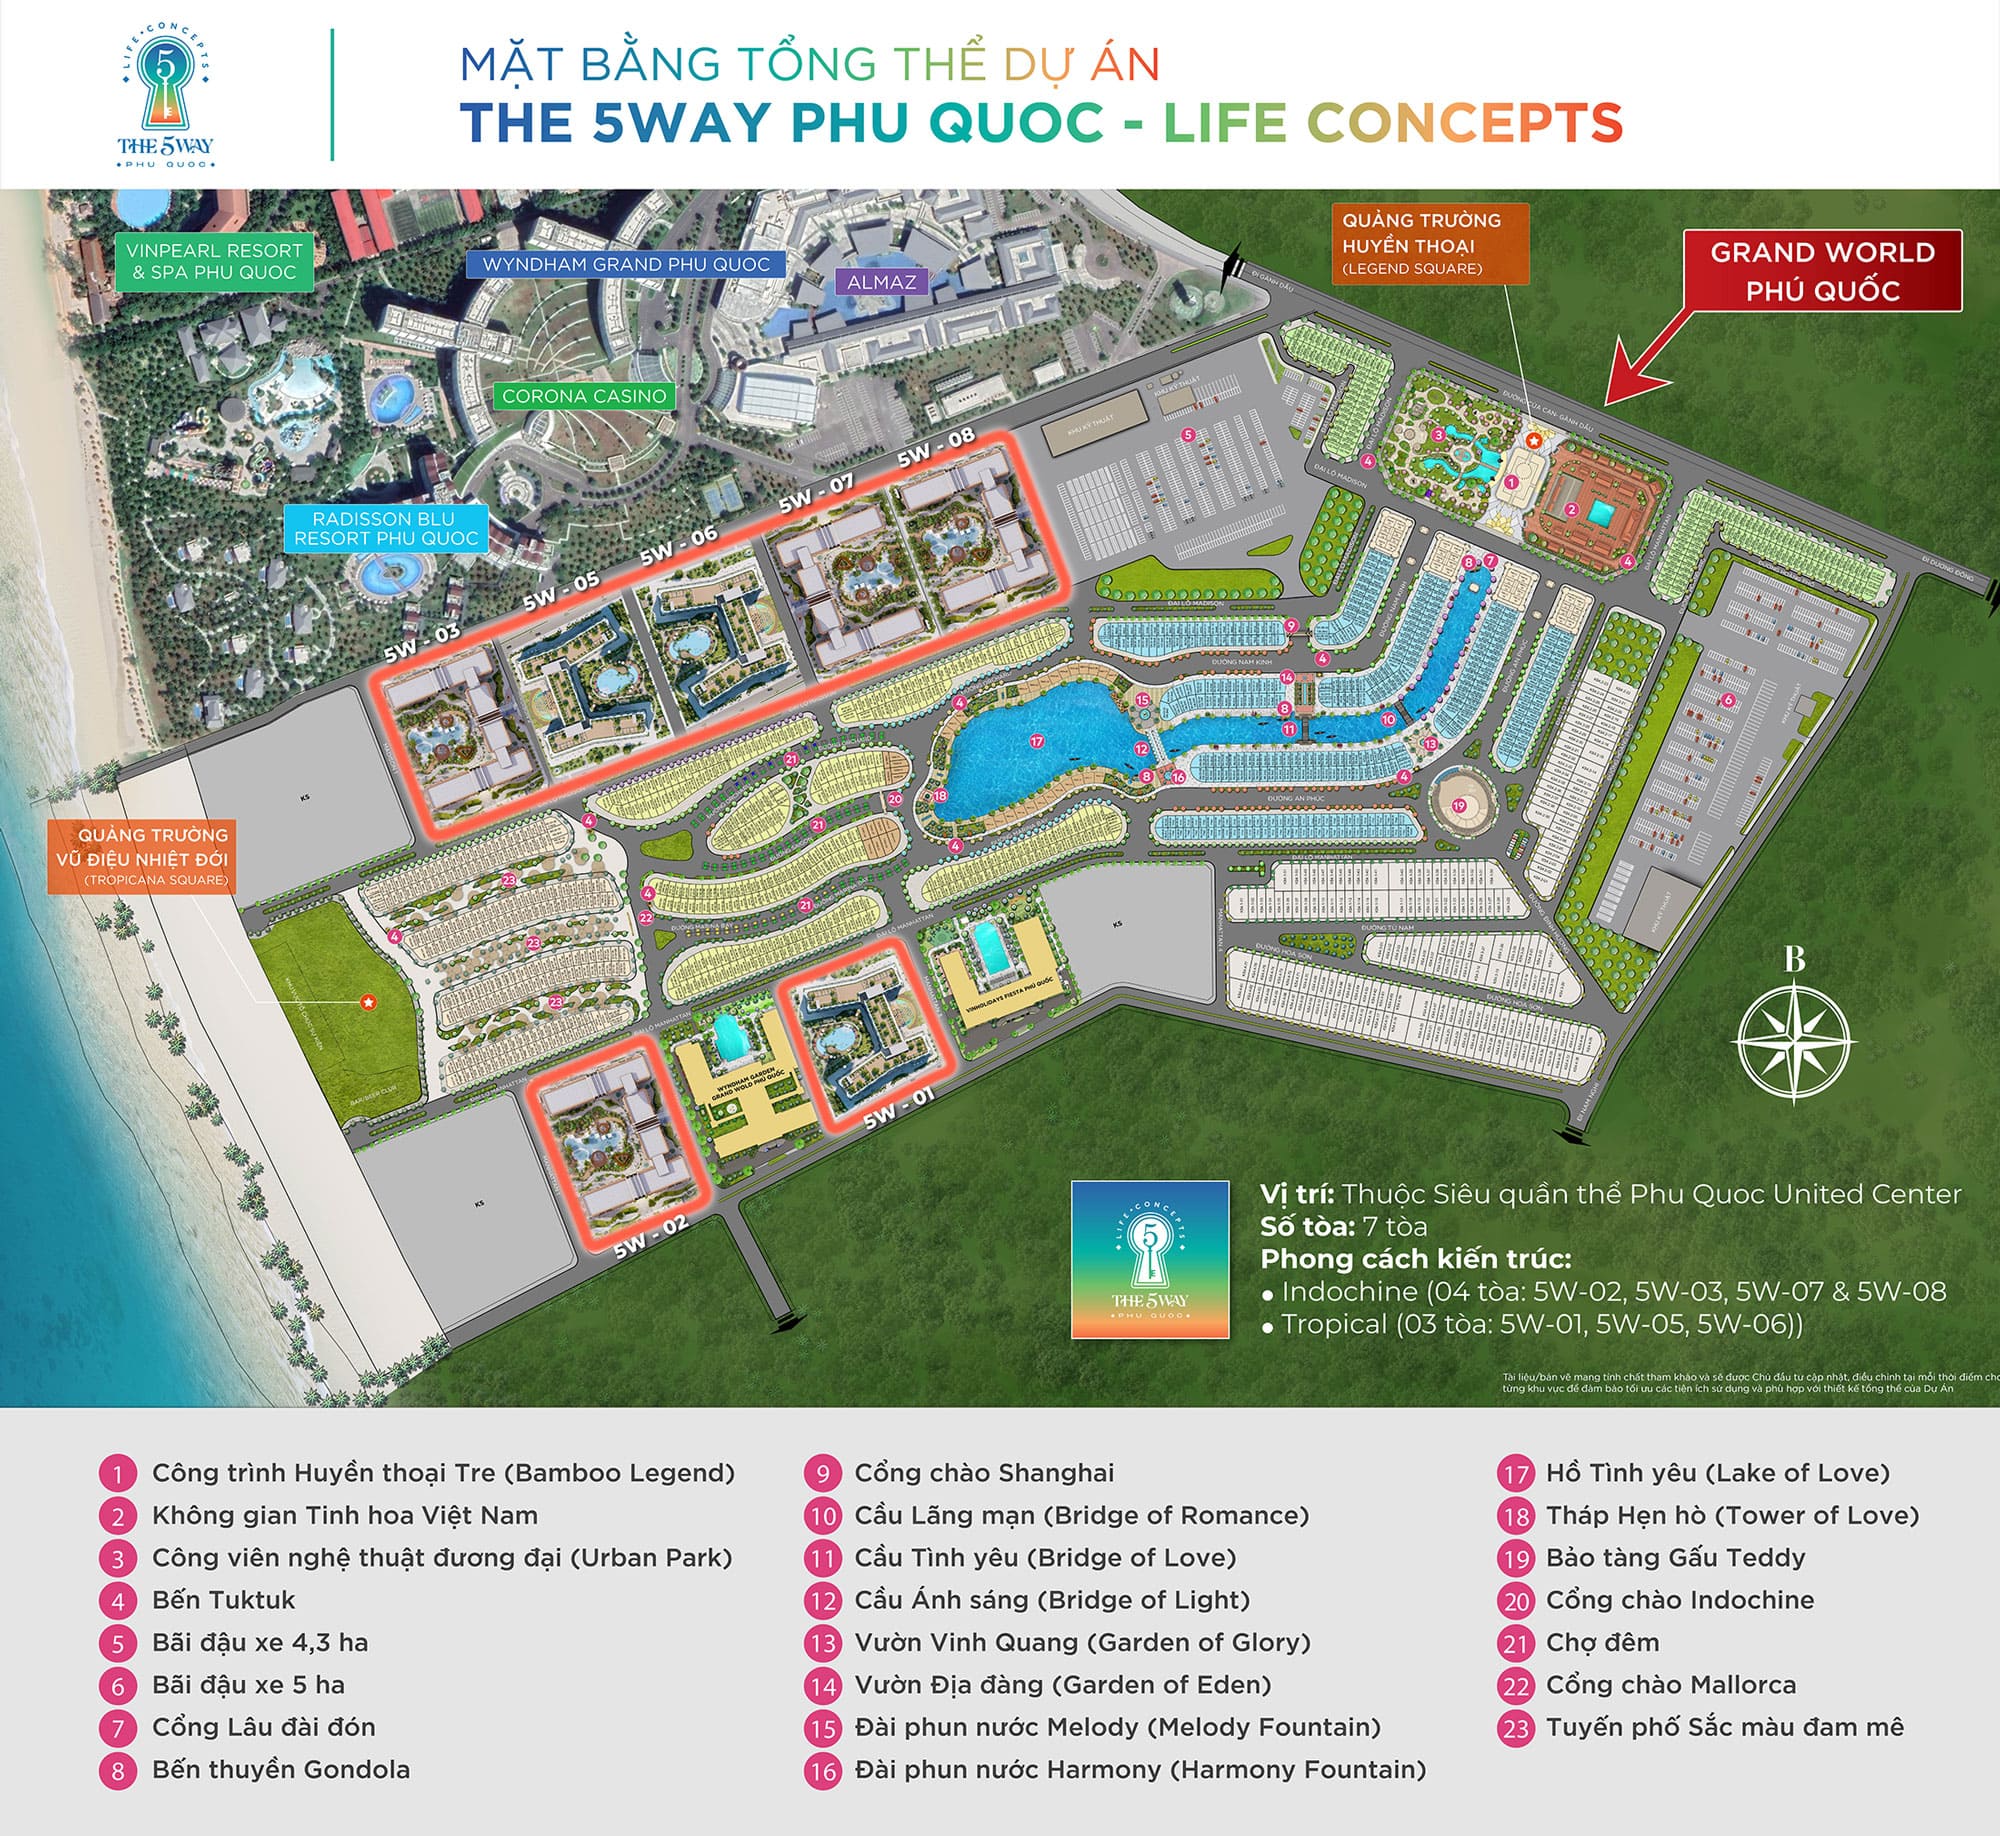 Mặt bằng tổng thể dự án The 5Way Phú Quốc Life Concepts.